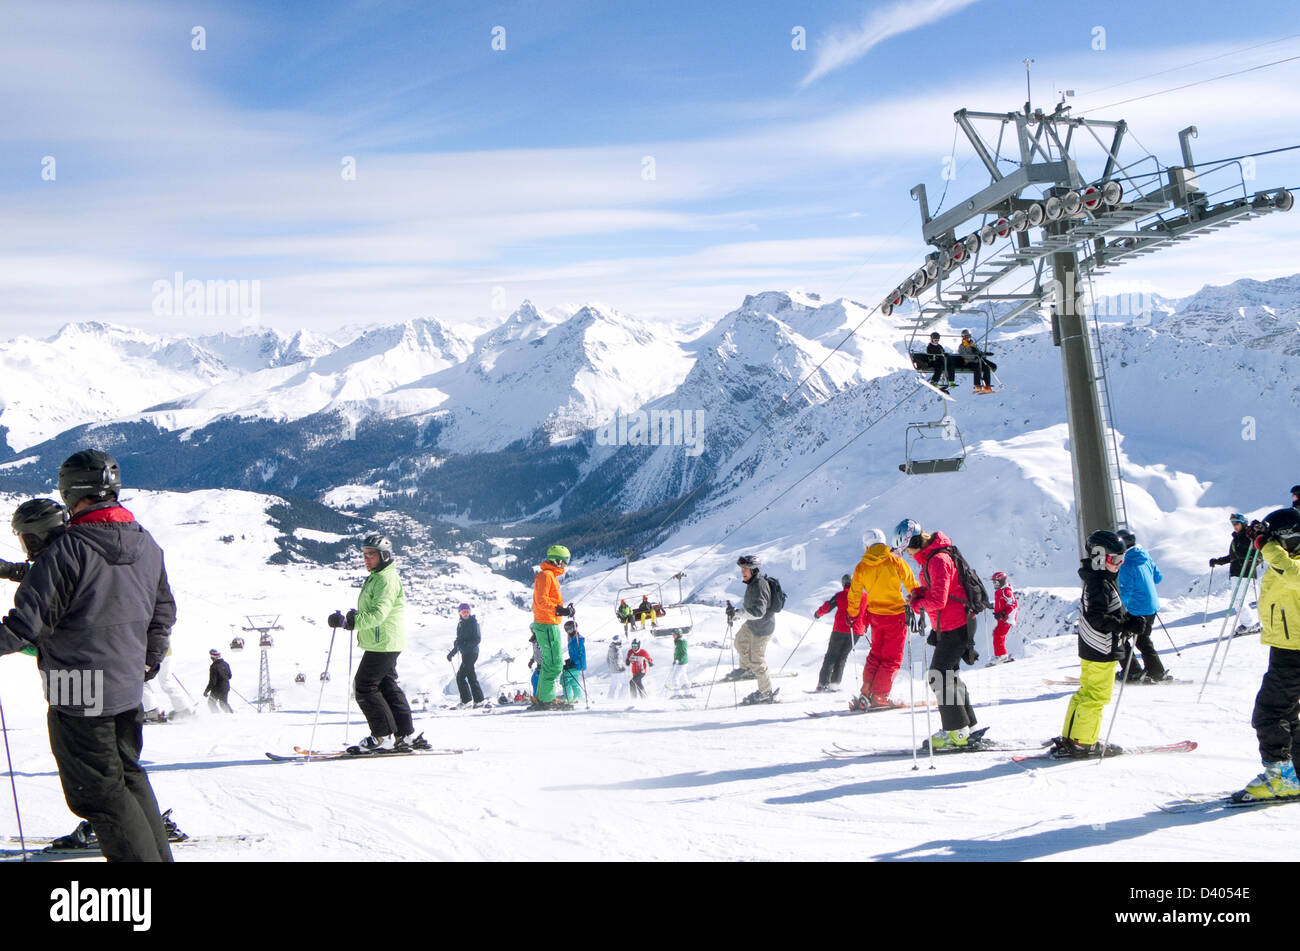 Les Skieurs sur les pistes de ski alpin à la station de ski d'Arosa, les Alpes, Suisse, Europe Banque D'Images